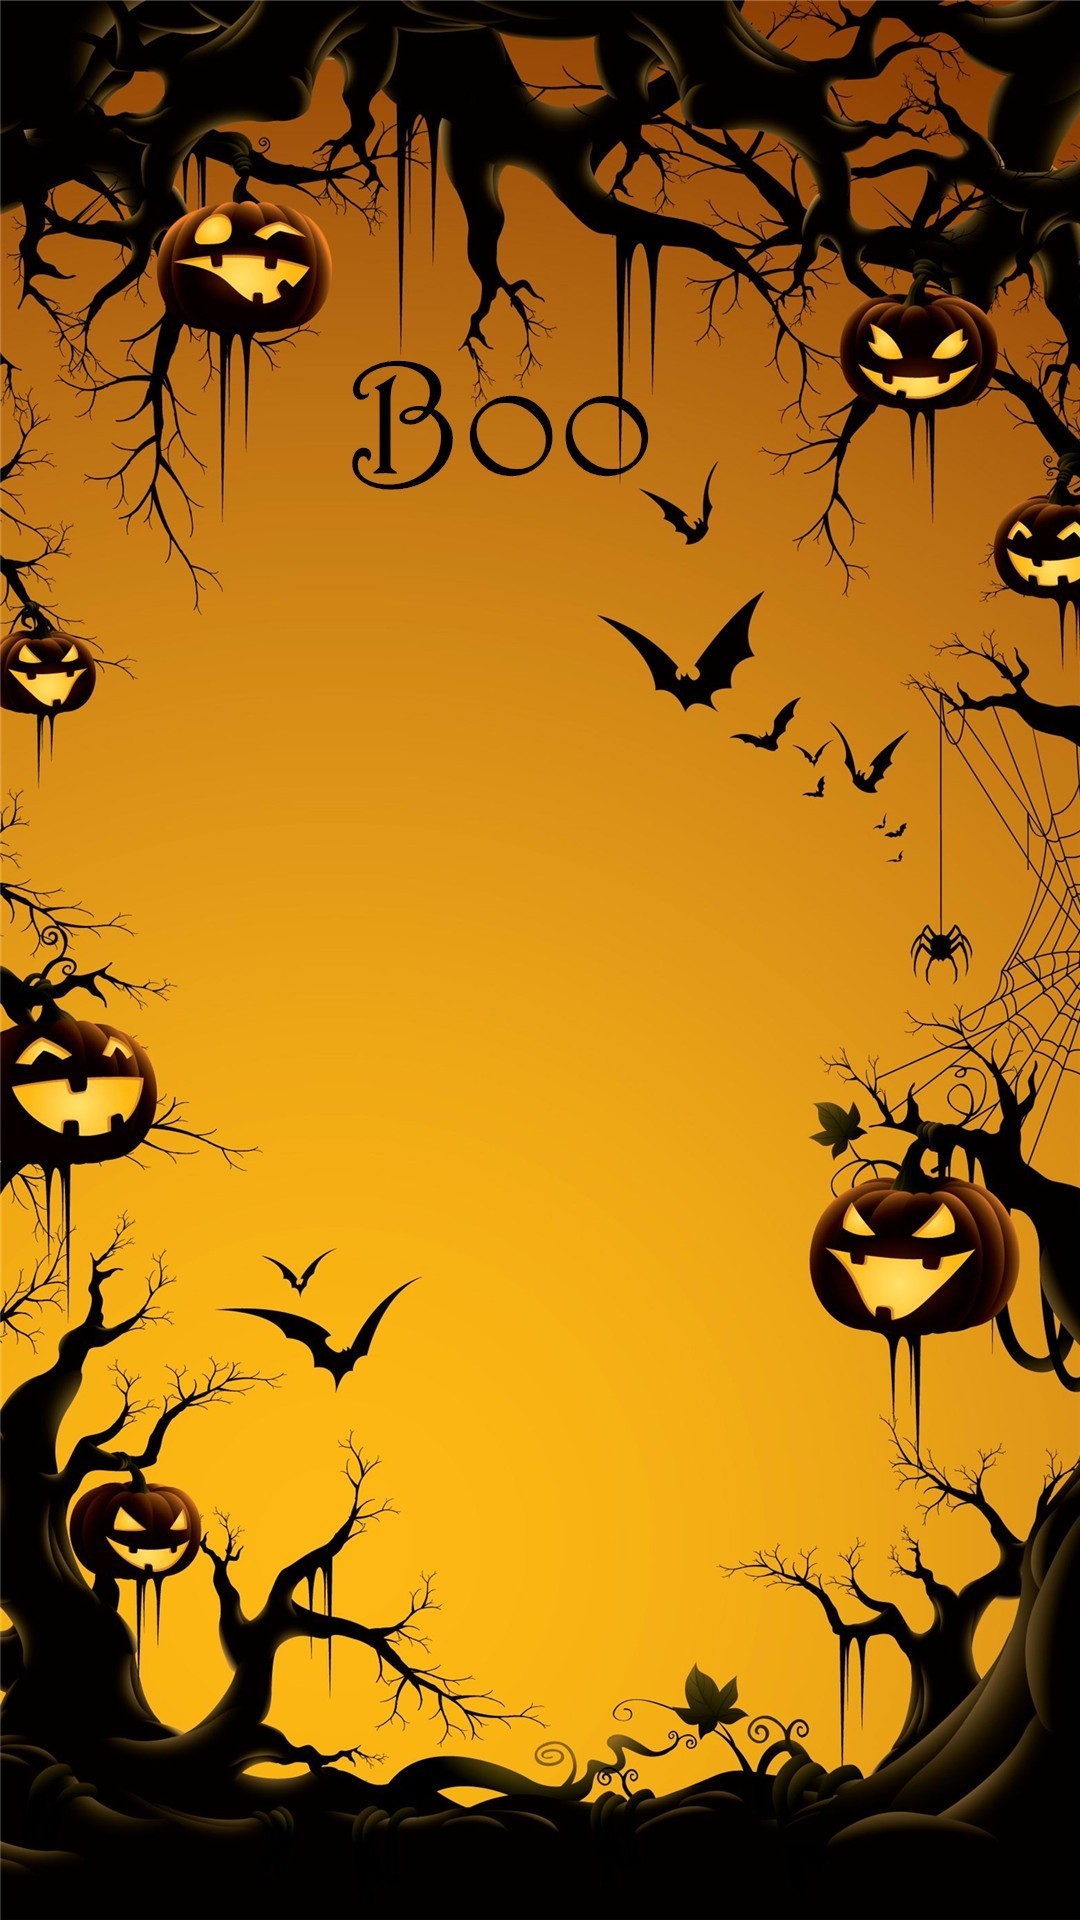 2014 Boo Halloween Iphone 6 Plus Wallpaper With Pumpkin - Cool Halloween Poster Ideas - HD Wallpaper 